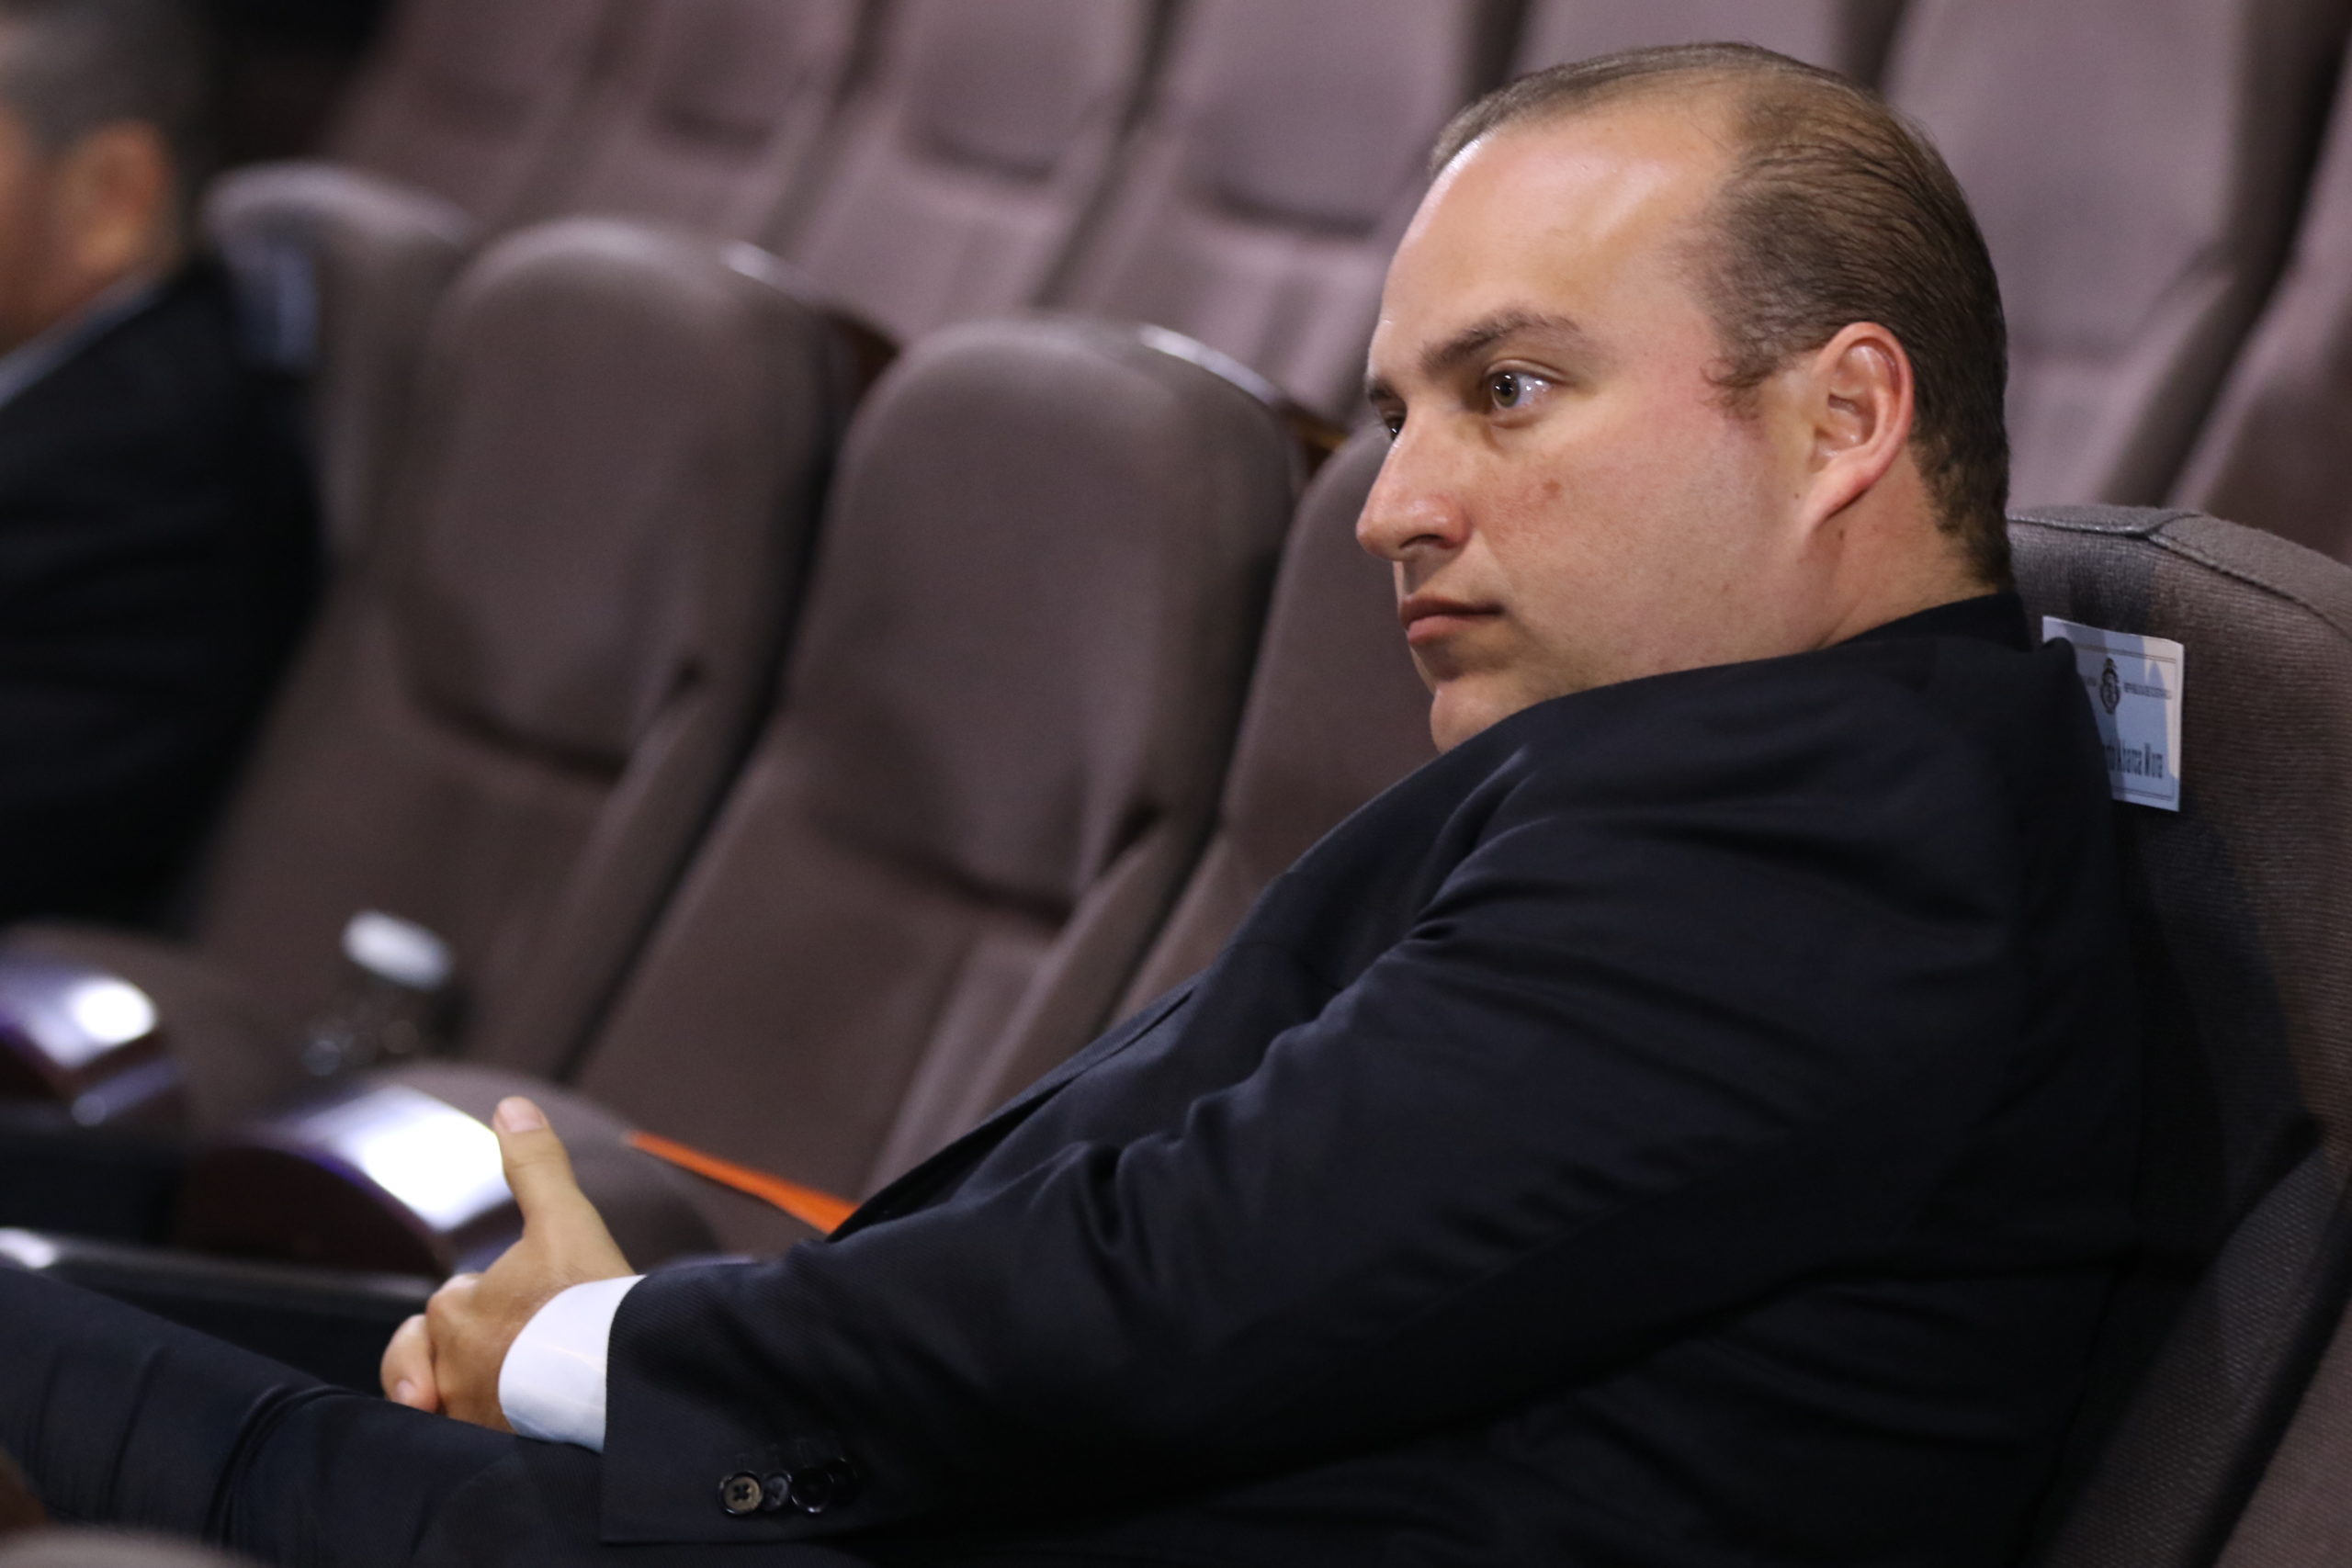 El legislador del PUSC, Pablo Abarca acusó a compañeros de su fracción de firmar un acuerdo a espaldas de la fracción legislativa socialcristiana